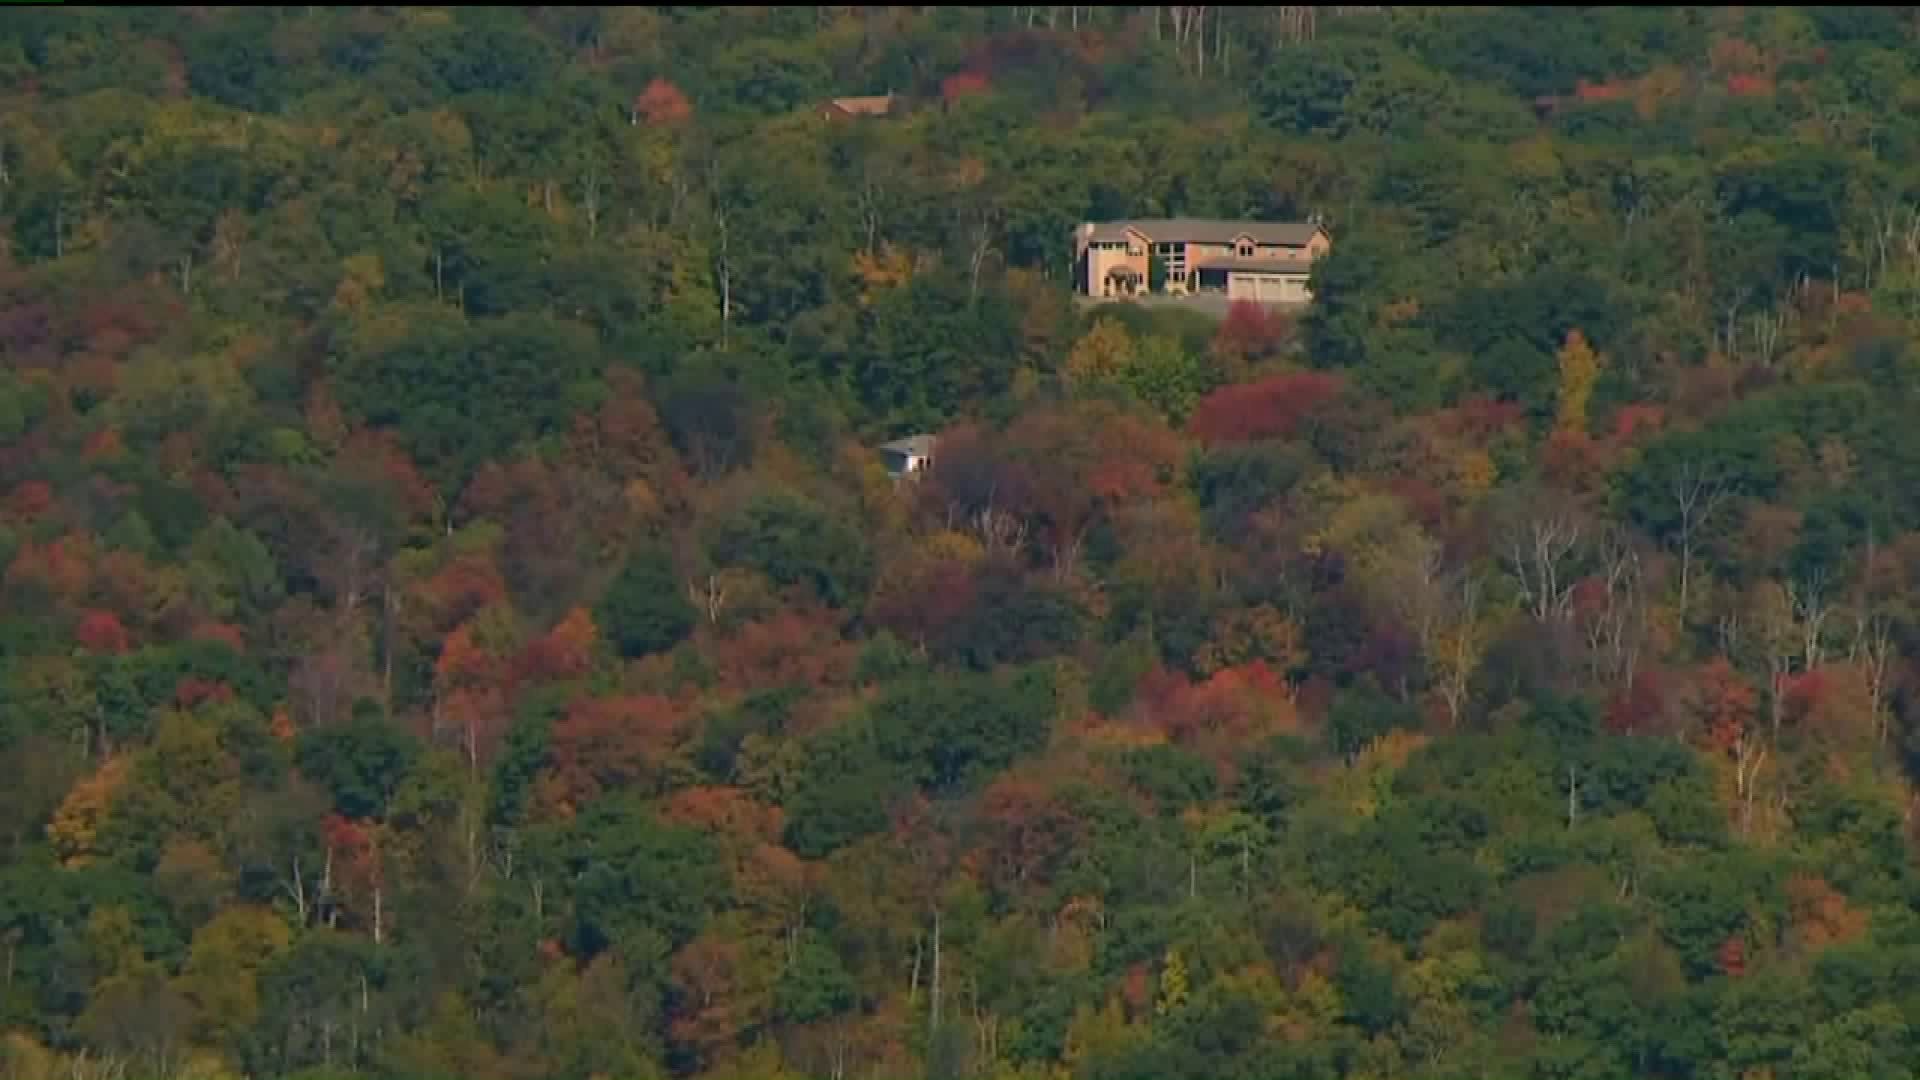 Peak Fall Colors in the Poconos